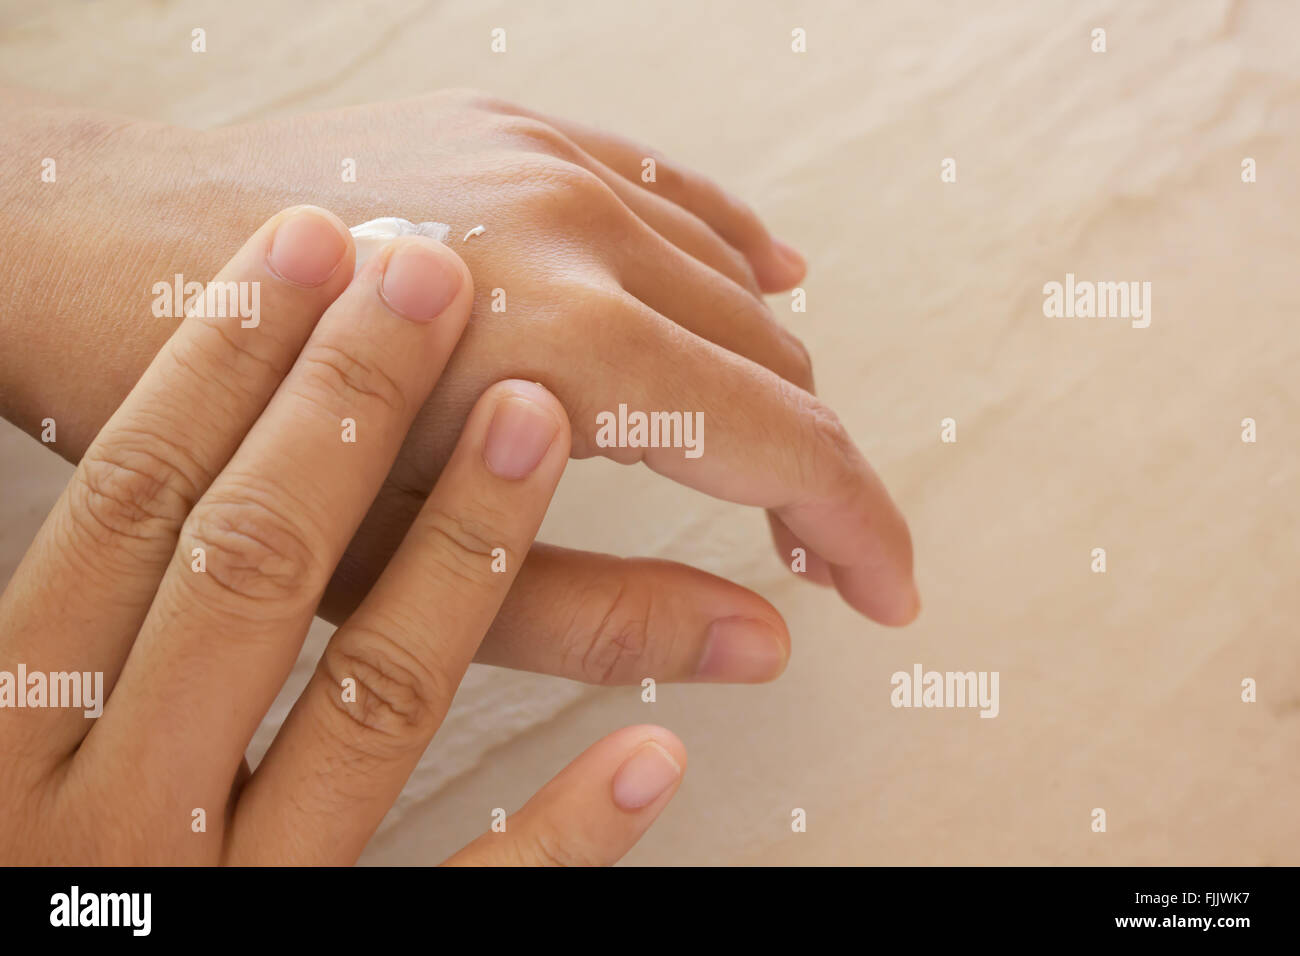 Las mujeres las manos secas, aplicar loción para el cuidado de la piel o con espacio de copia Foto de stock